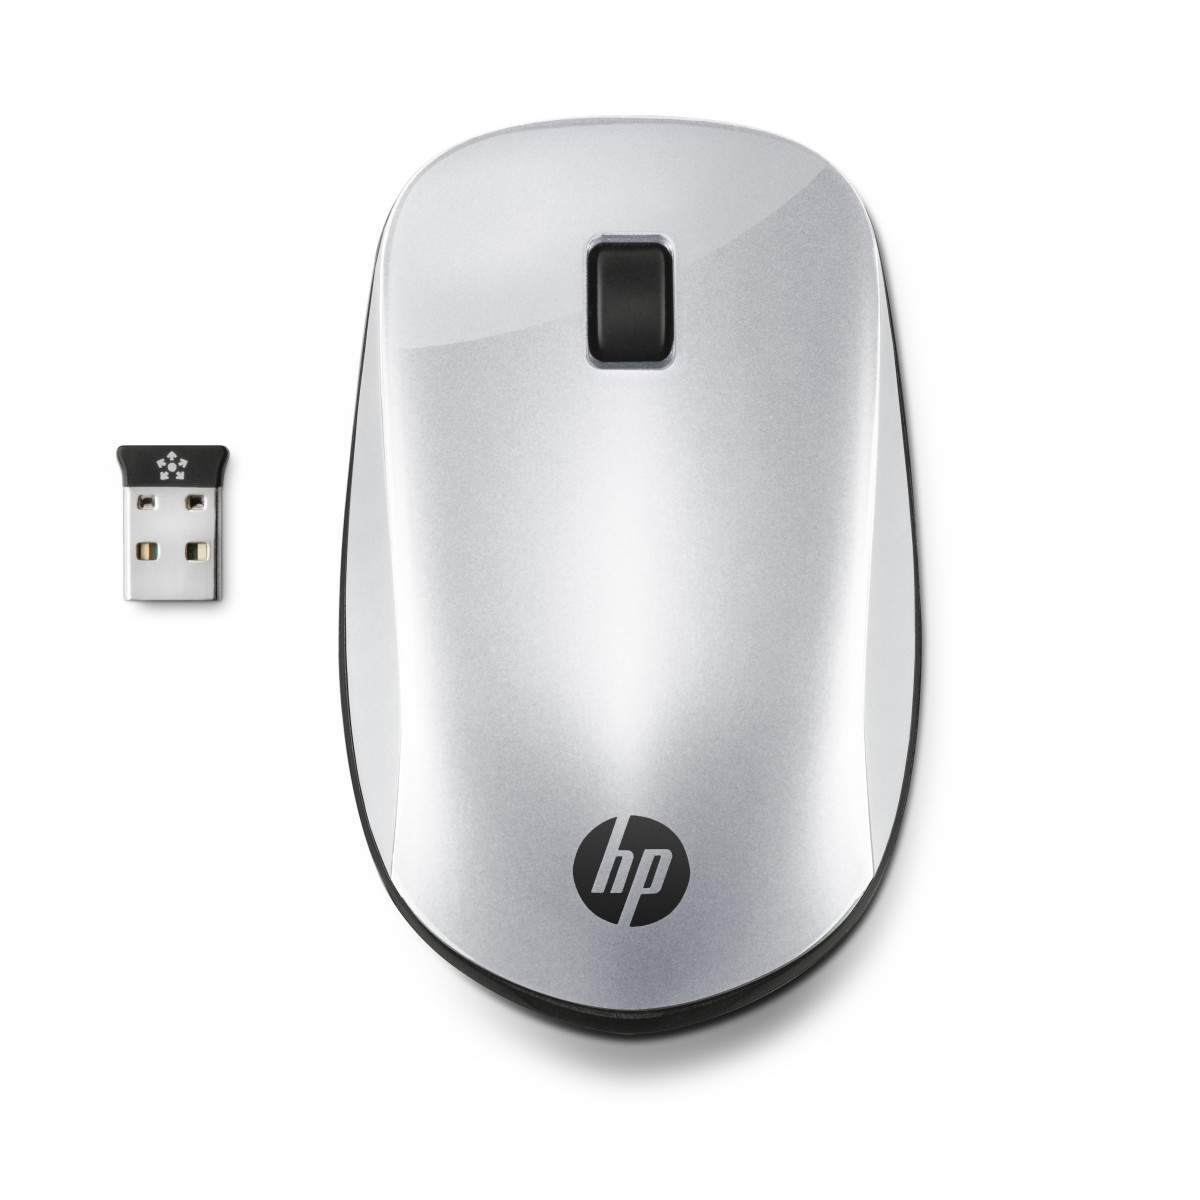 Bezdrátová myš HP Z4000 - stříbrná (2HW66AA)